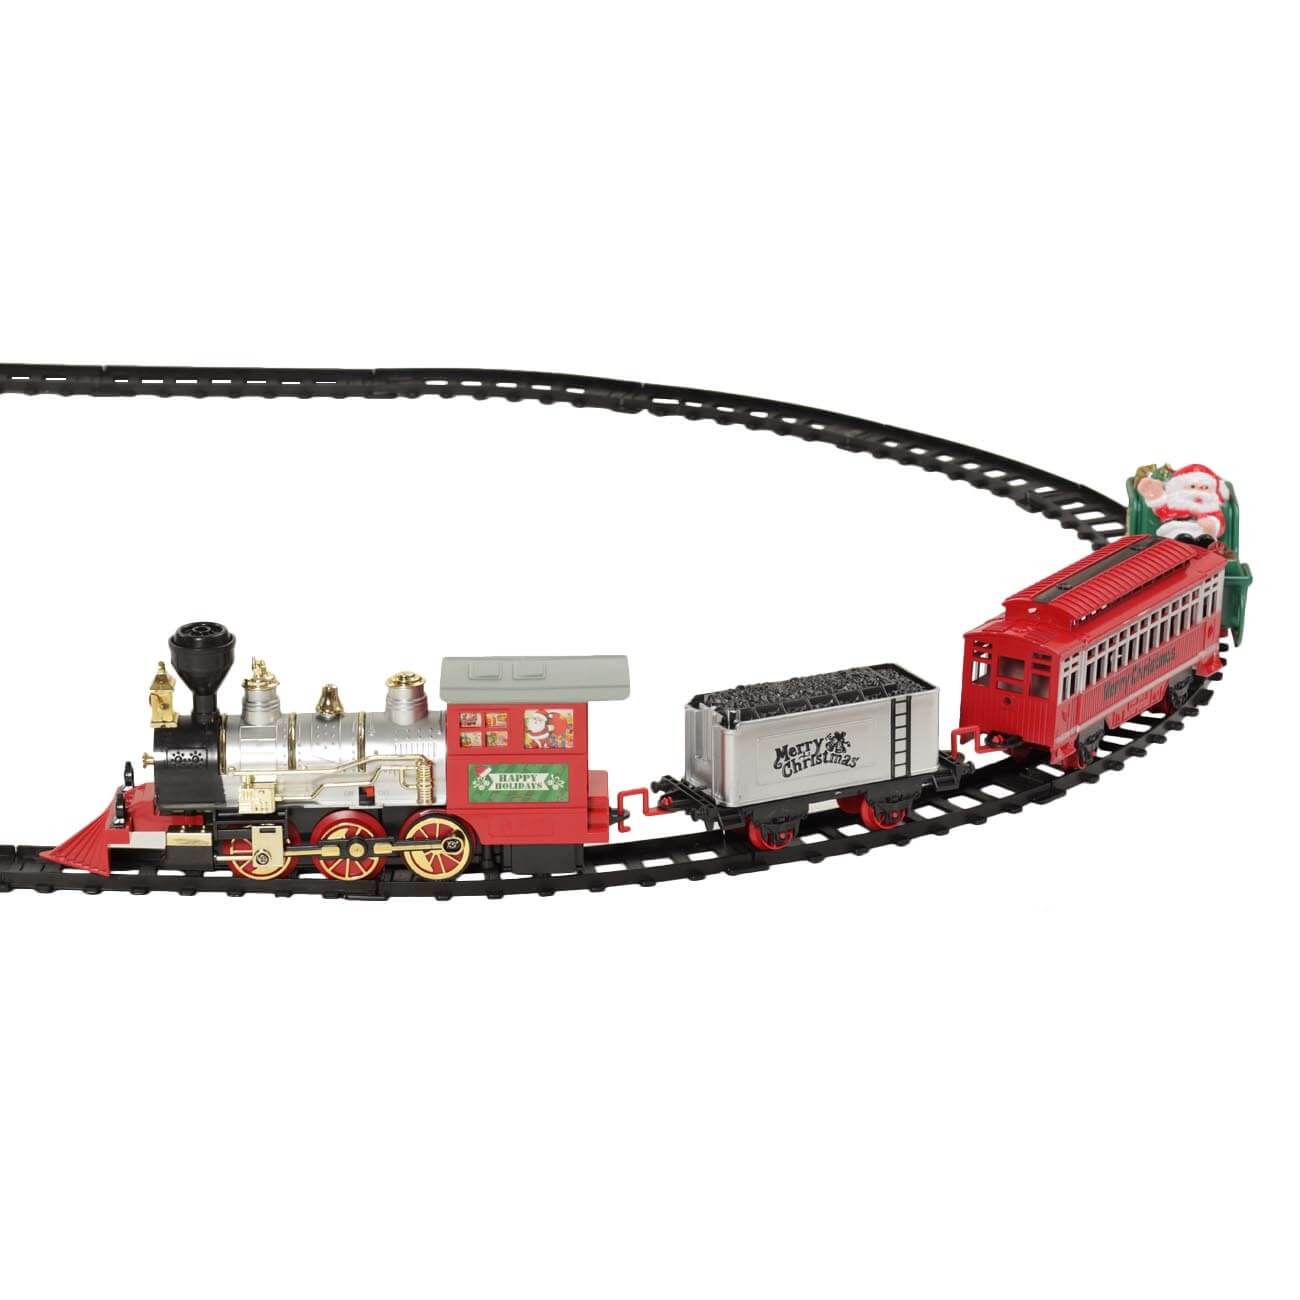 Железная дорога игрушечная, S, музыкальная, с подсветкой/дымом, пластик, Game rail